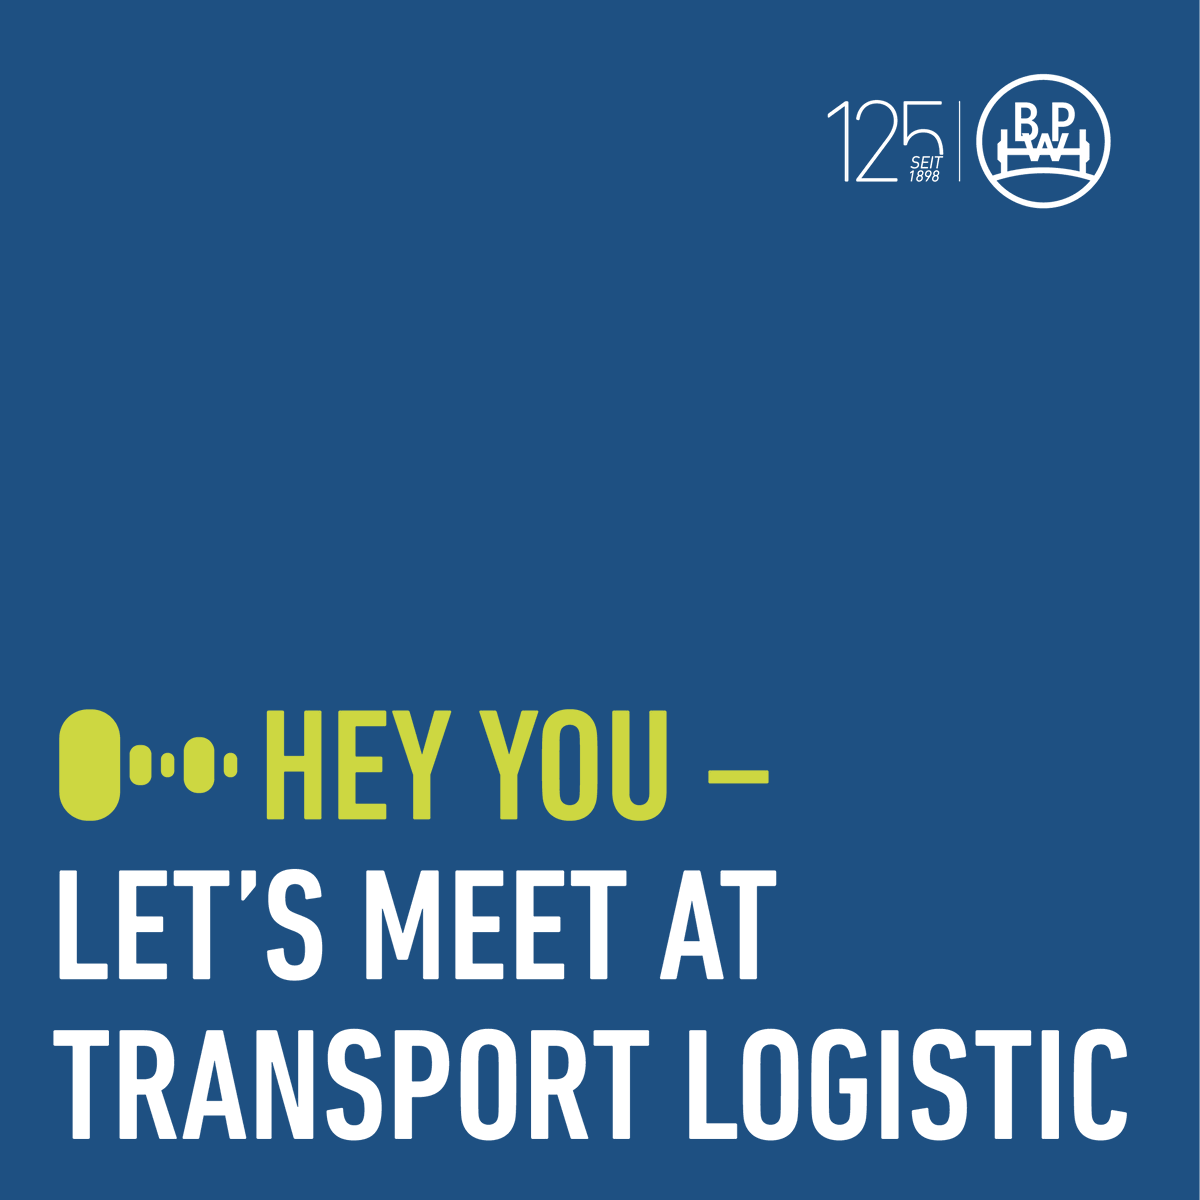 Entdecken Sie die innovativen Truck- und Trailerlösungen der BPW Gruppe und bleiben Sie immer up to date, was unseren Messeauftritt auf der transport logistic 2023 angeht. #heyyou 
🗓 9.–12. Mai 2023 
📲 https://t.co/8UYgVJzAmq https://t.co/xbRseGba6X